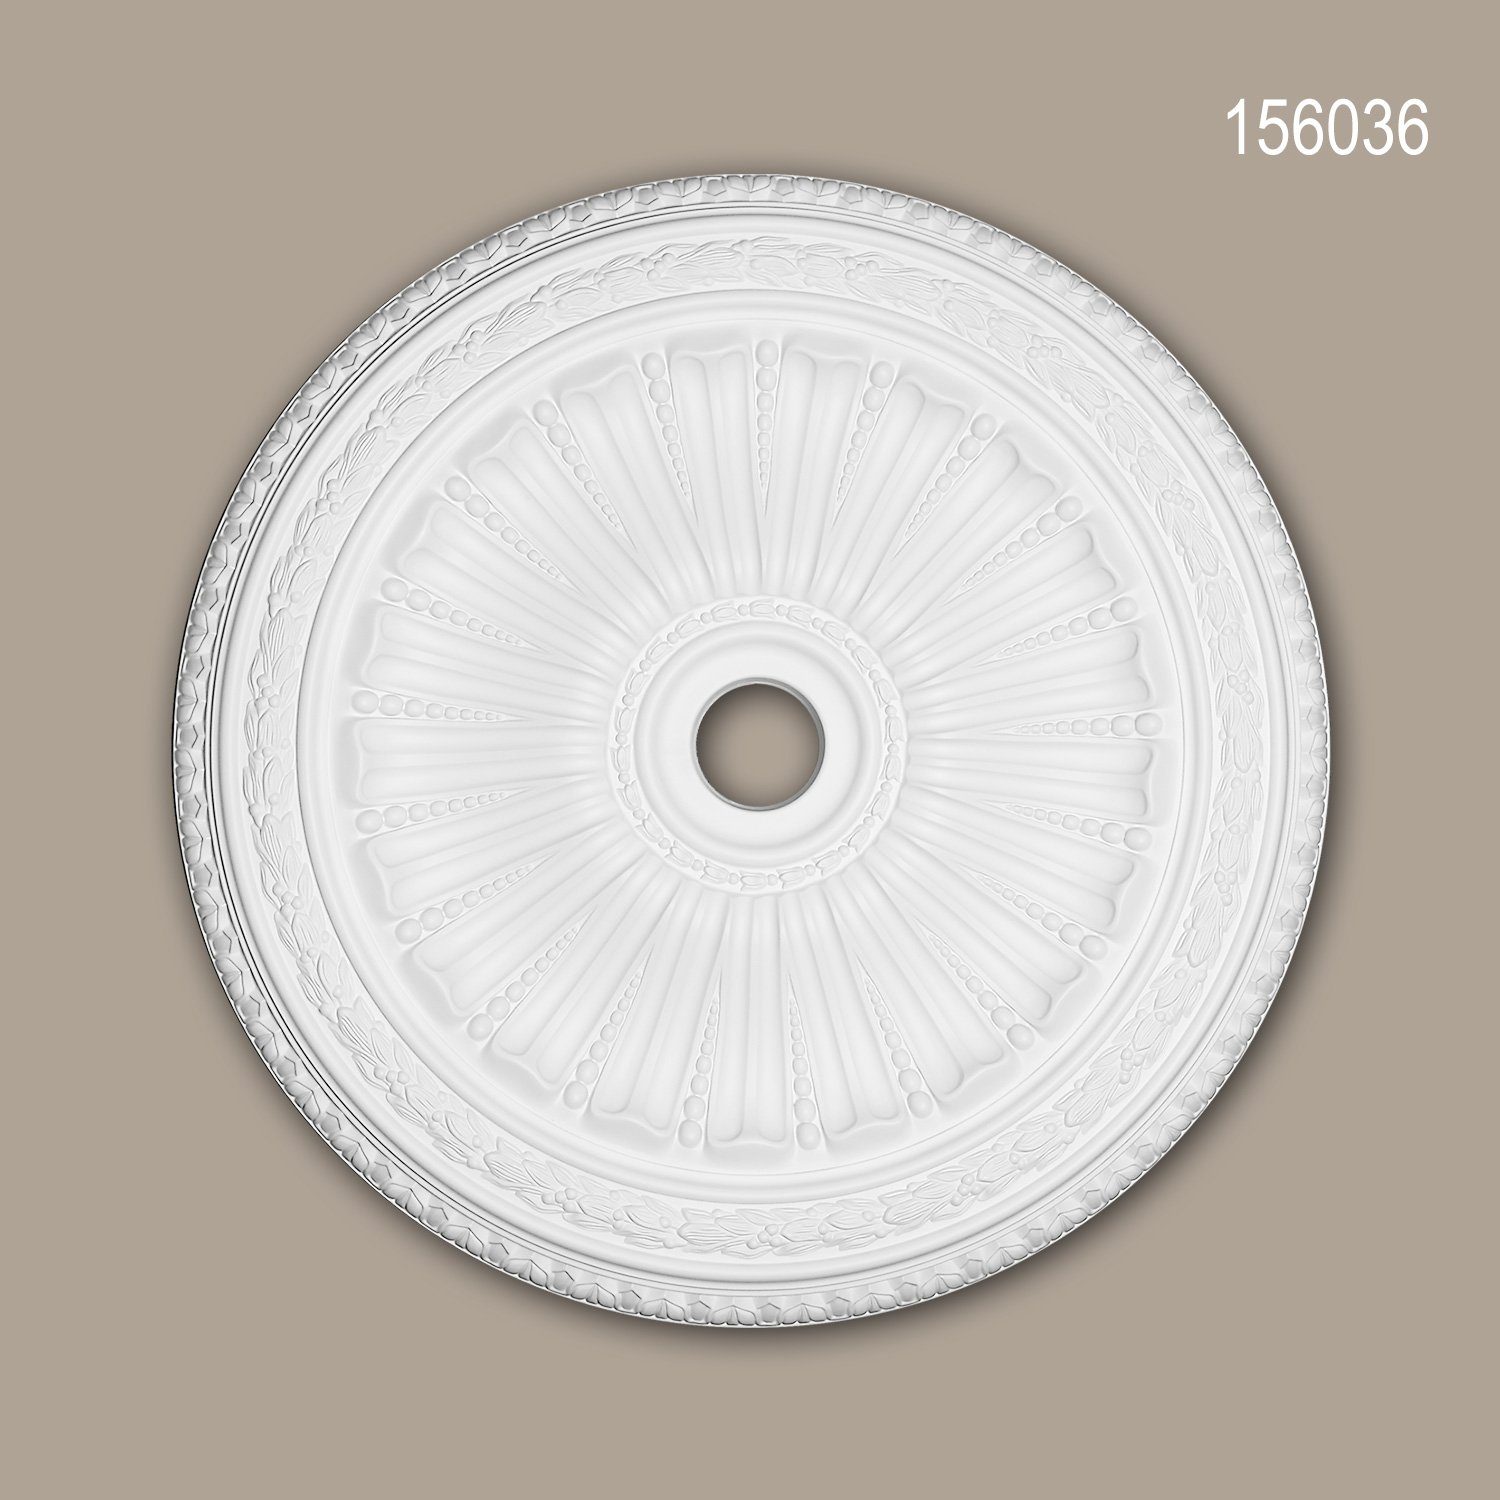 Profhome Decken-Rosette 156036 (Rosette, 1 St., Deckenrosette, Medallion, Stuckrosette, Deckenelement, Zierelement, Durchmesser 88,7 cm), weiß, vorgrundiert, Stil: Neo-Renaissance